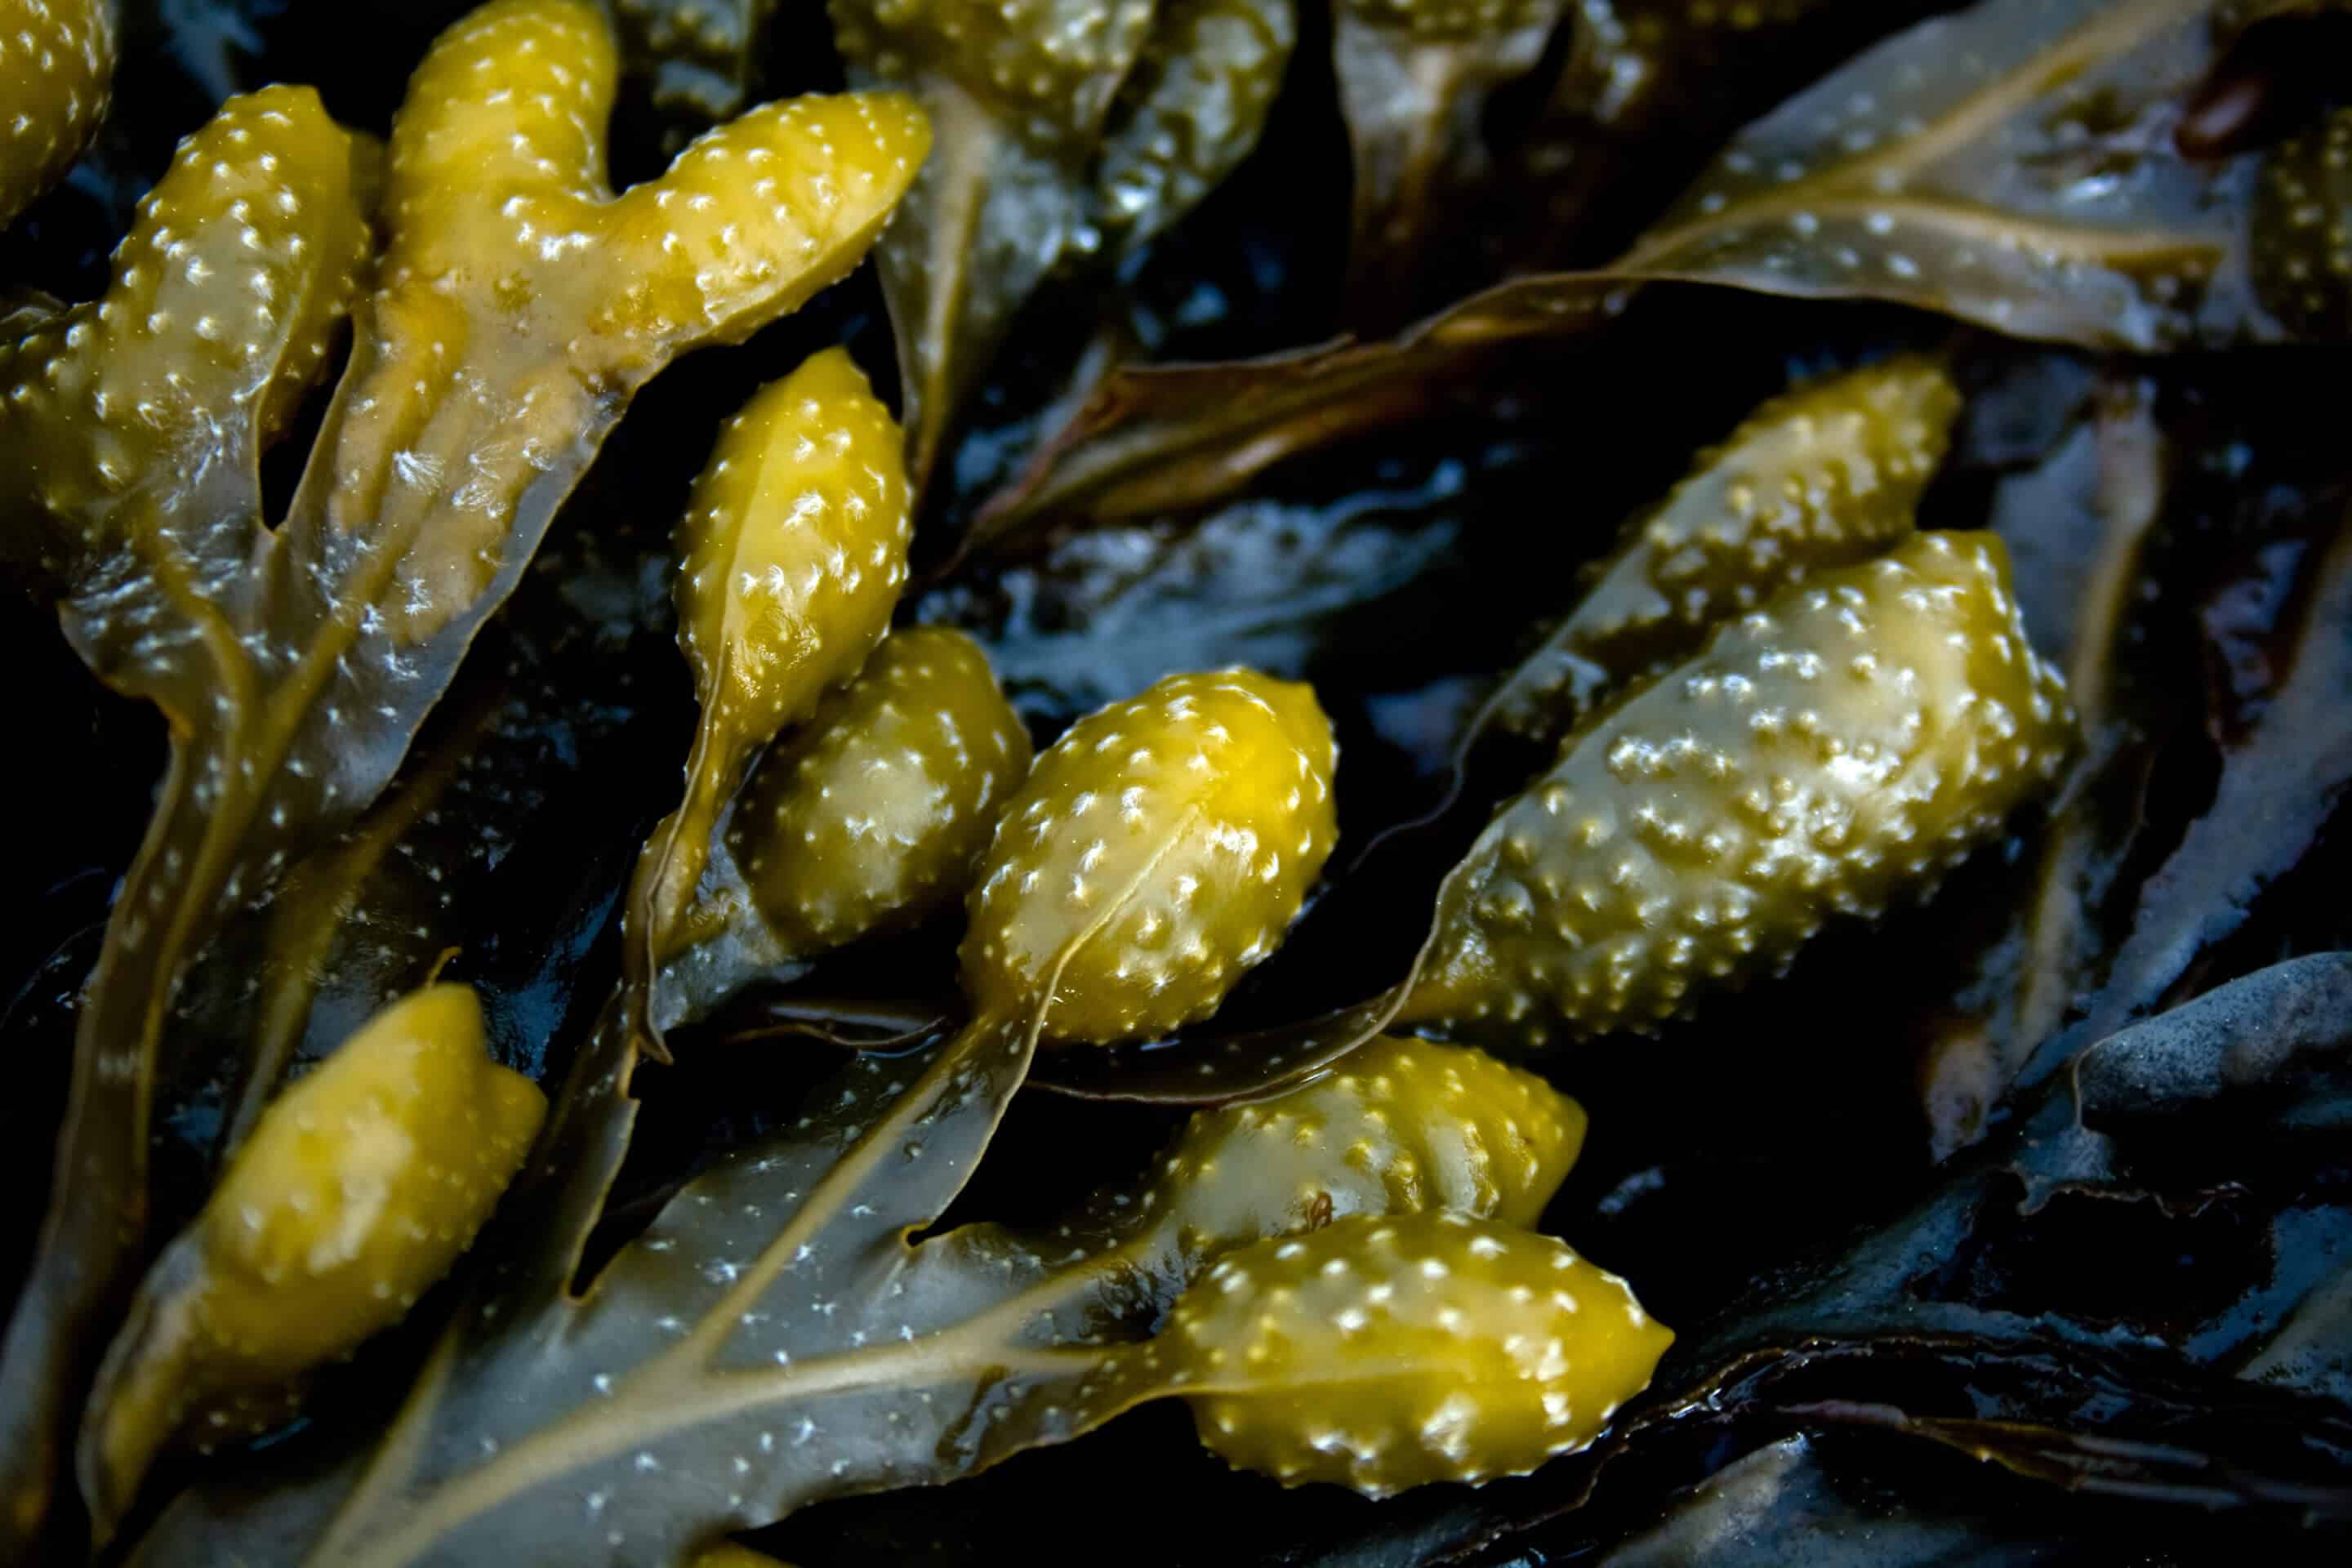 Seaweed nexira